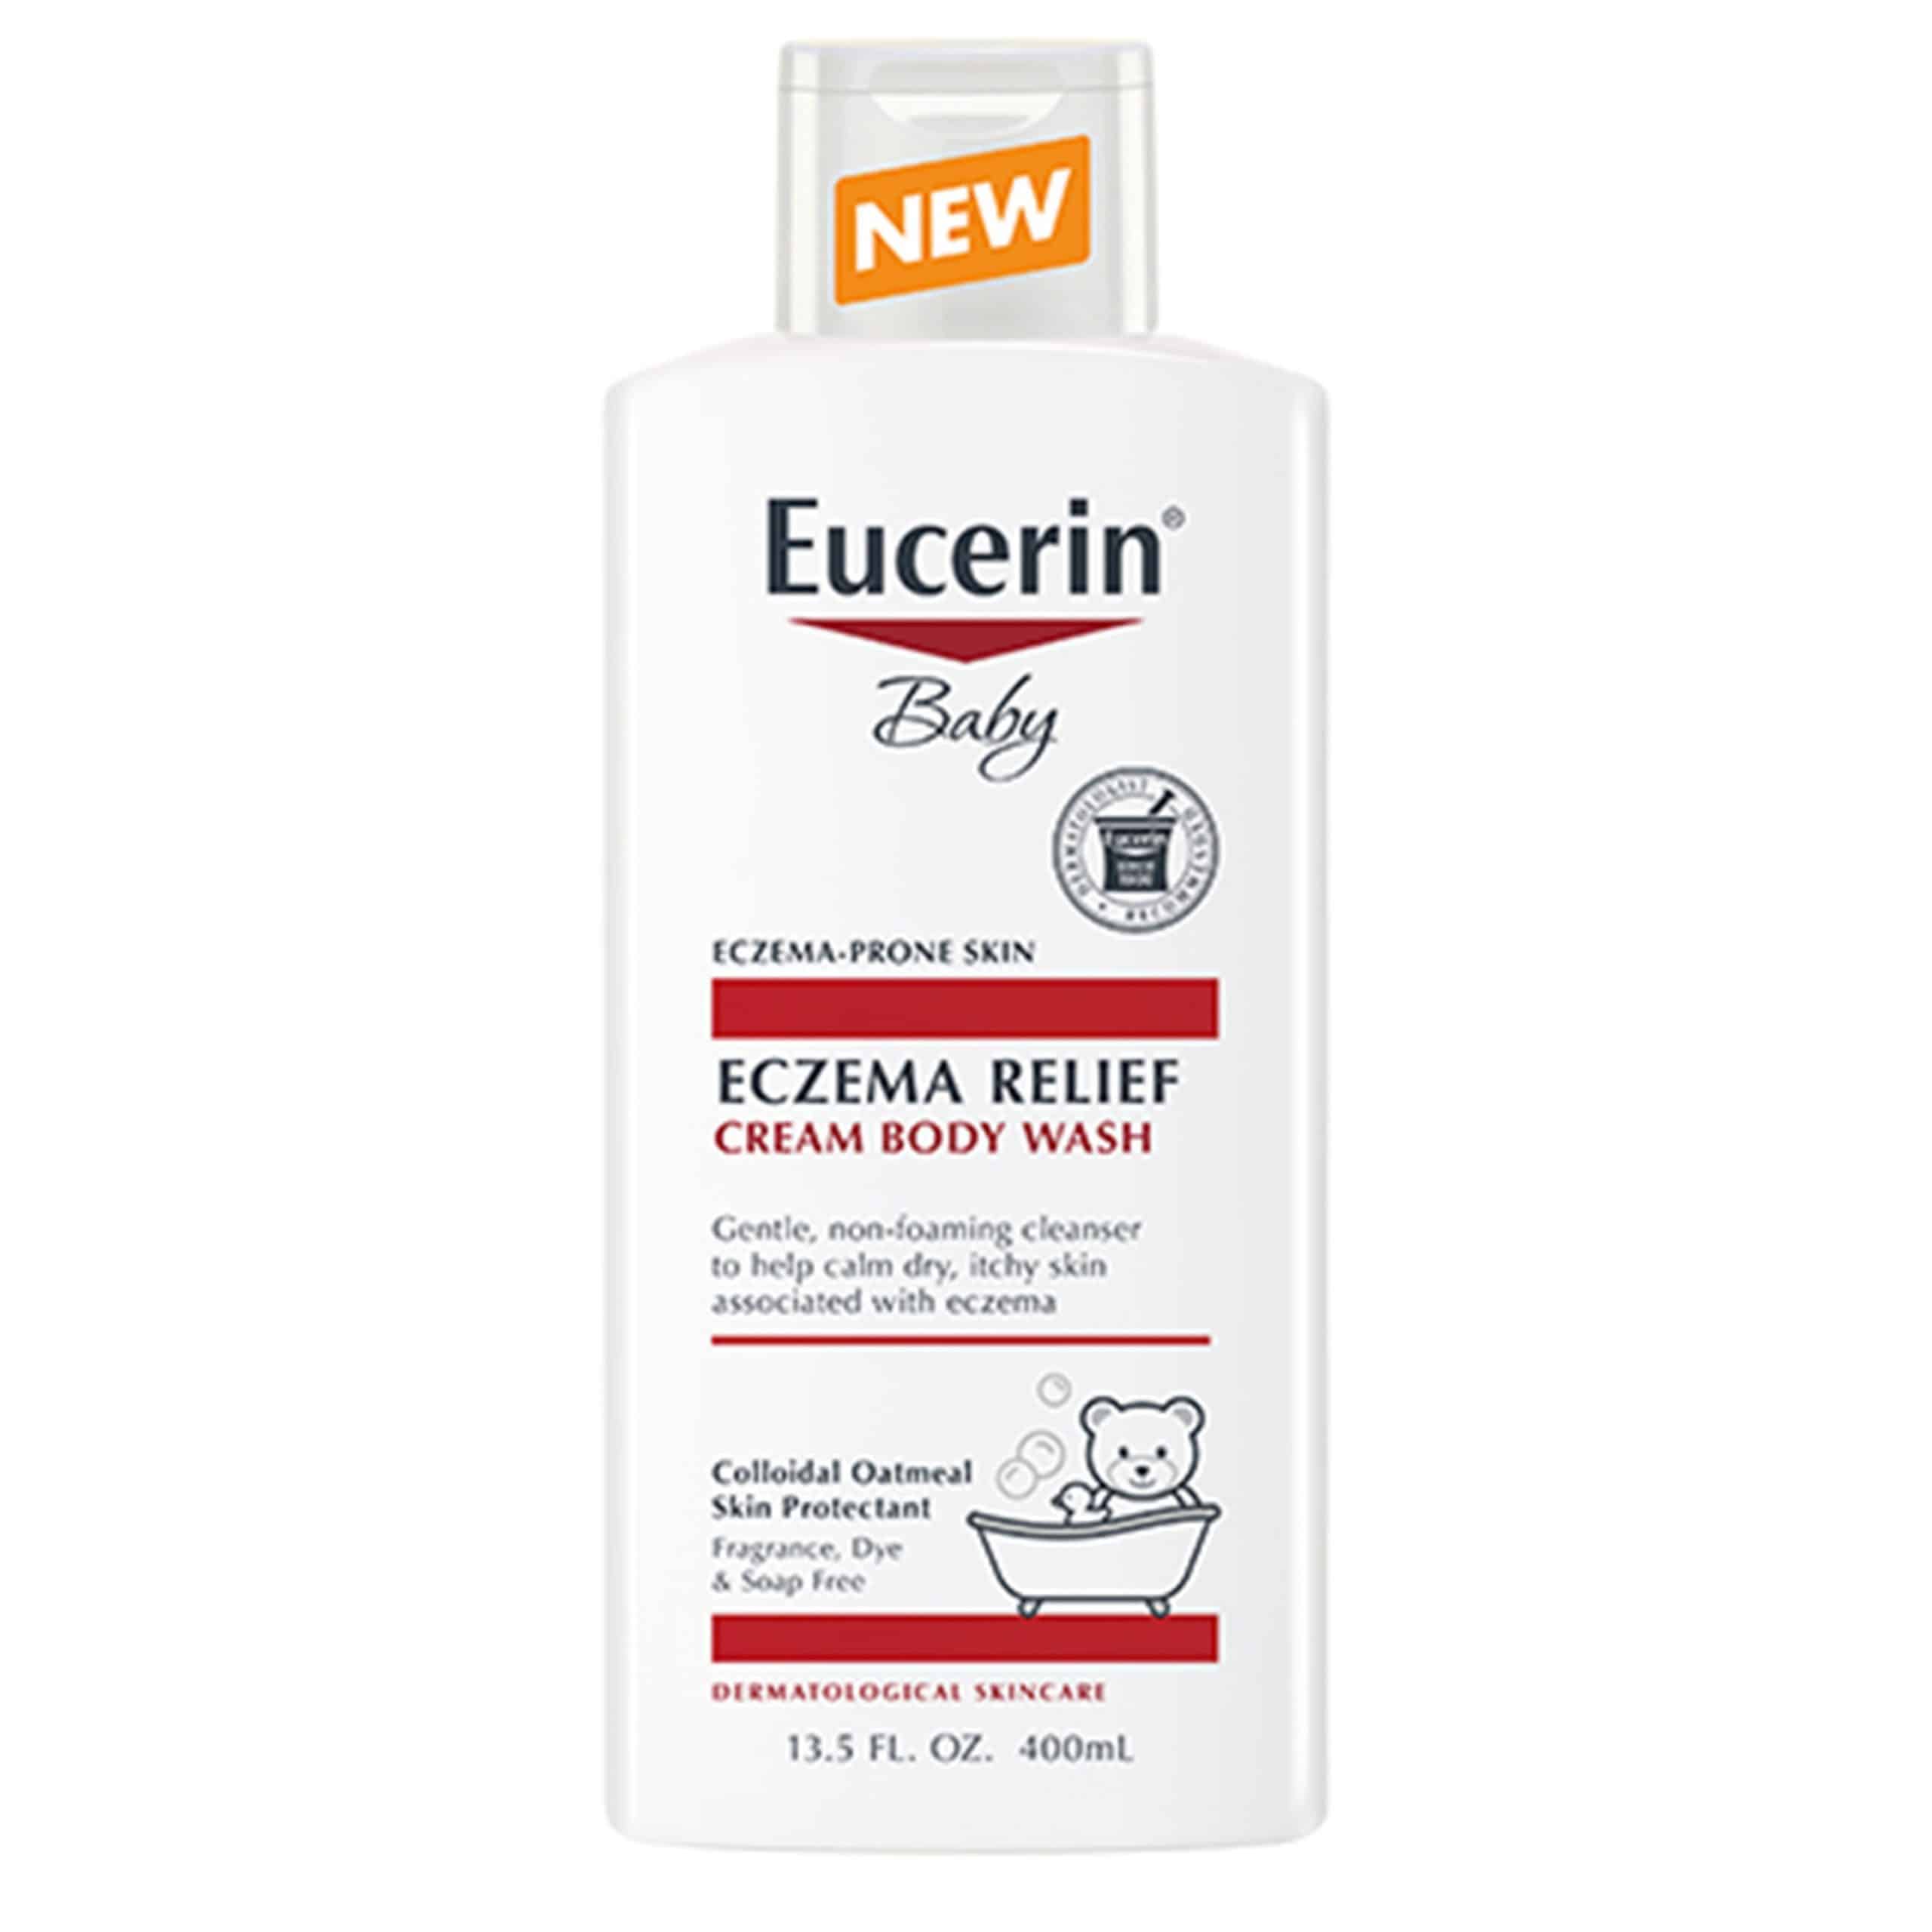 Eucerin Baby Eczema Relief Cream Body Wash, 13.5 fl. oz.